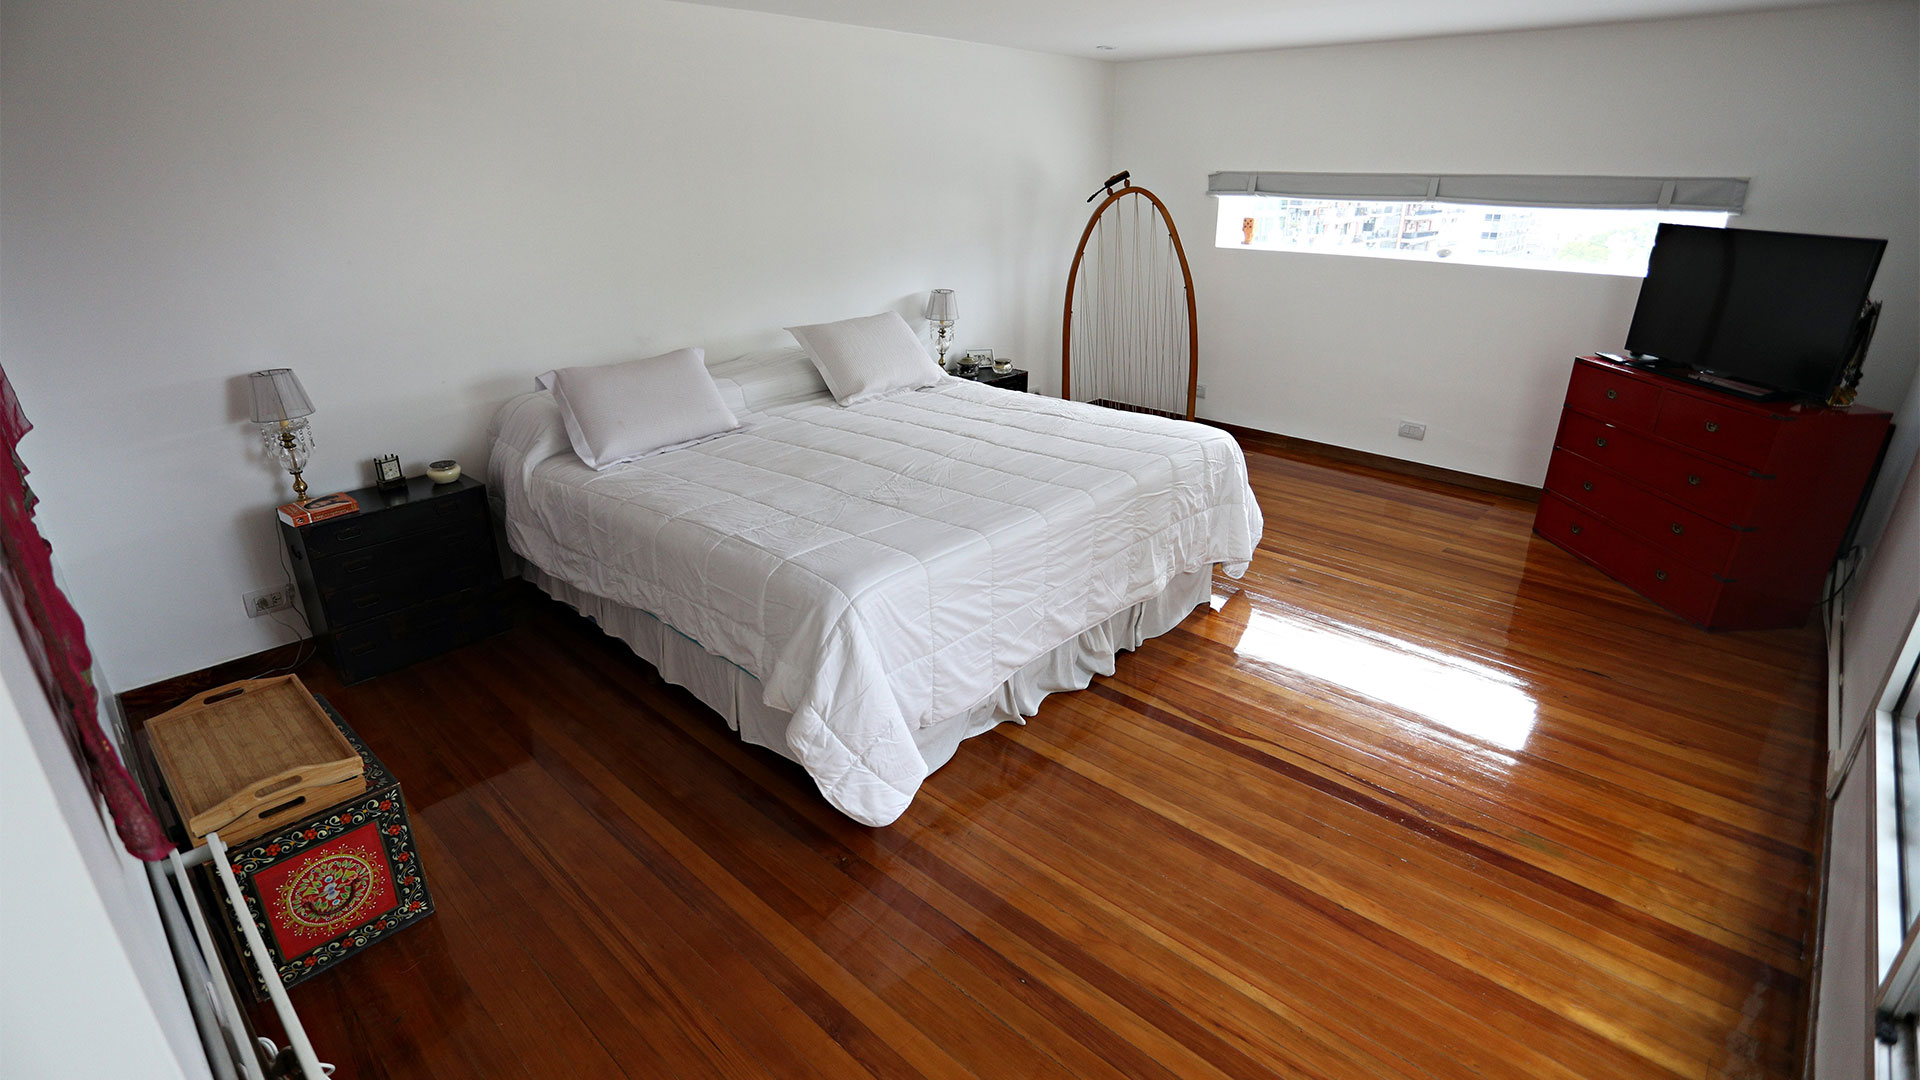 Uno de los dormitorios con pisos de pinotea